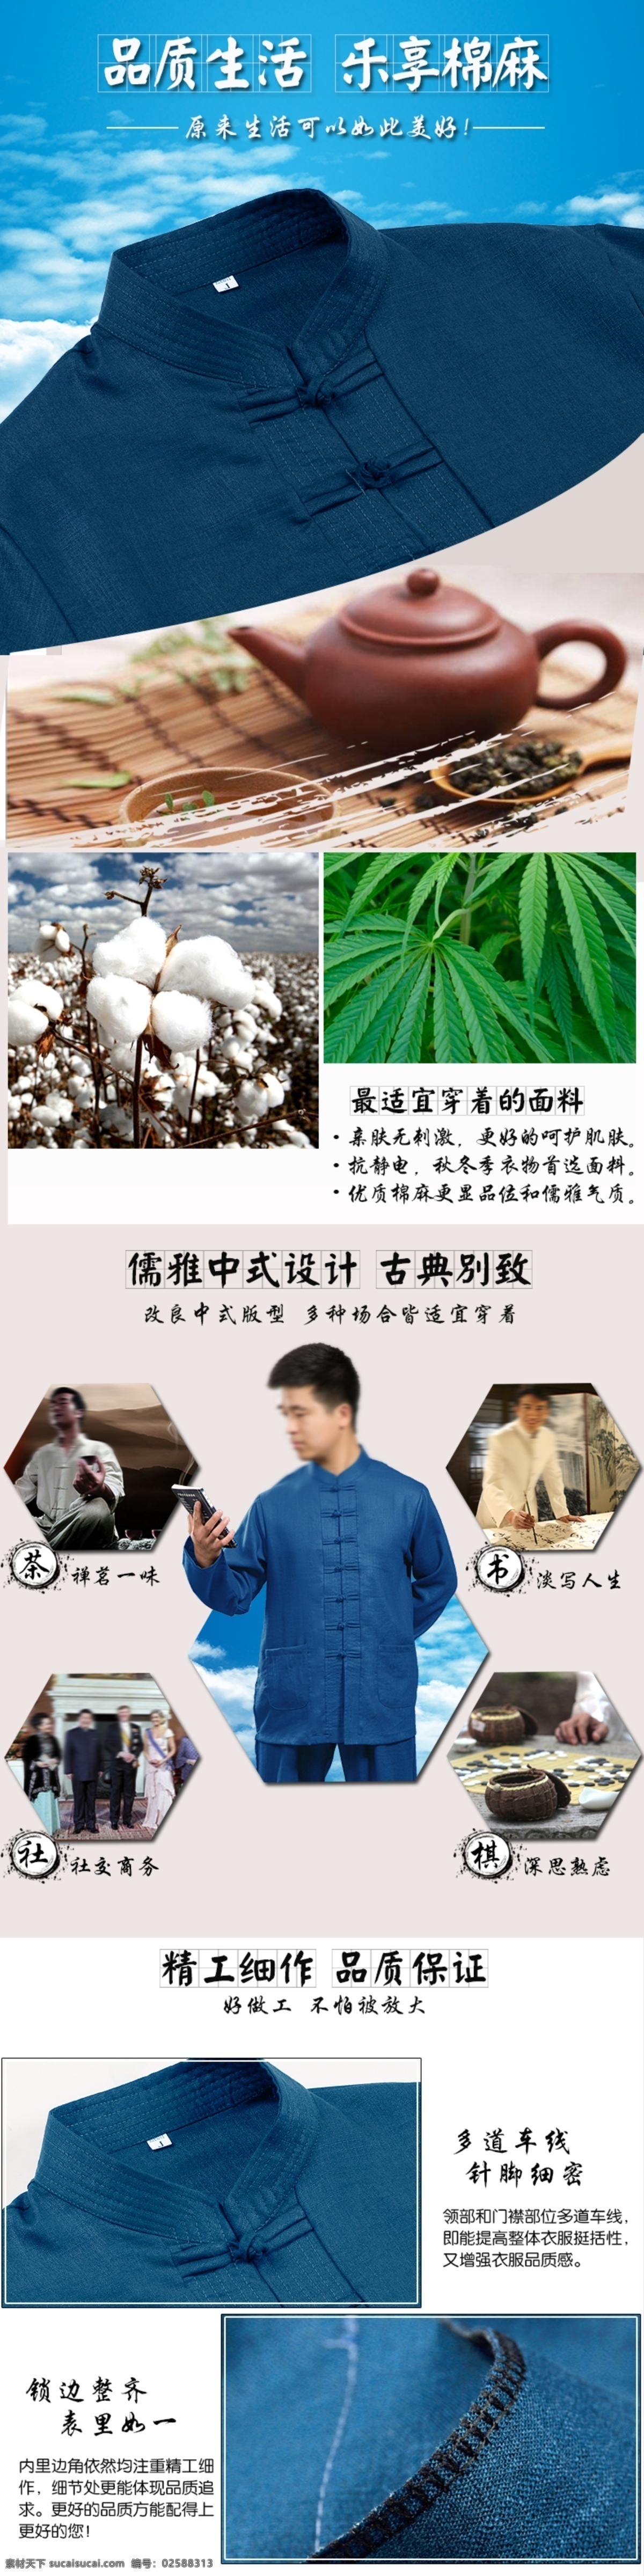 乐 享 棉麻 生活 中式服装 复古 中国风 自然